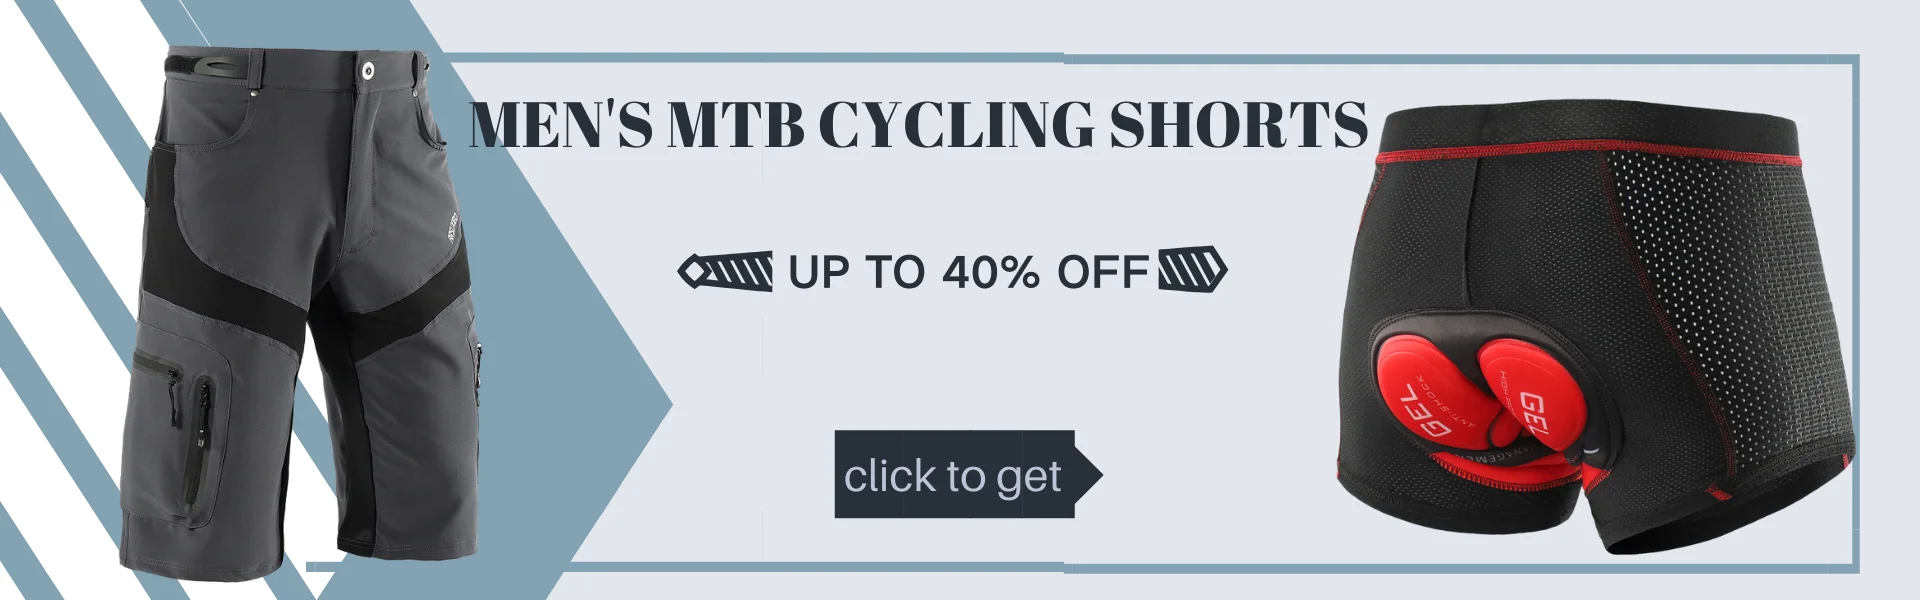 Мужские велосипедные шорты ARSUXEO Pro, спортивные шорты для горного велосипеда, шорты для горного велосипеда, свободные дышащие 1806